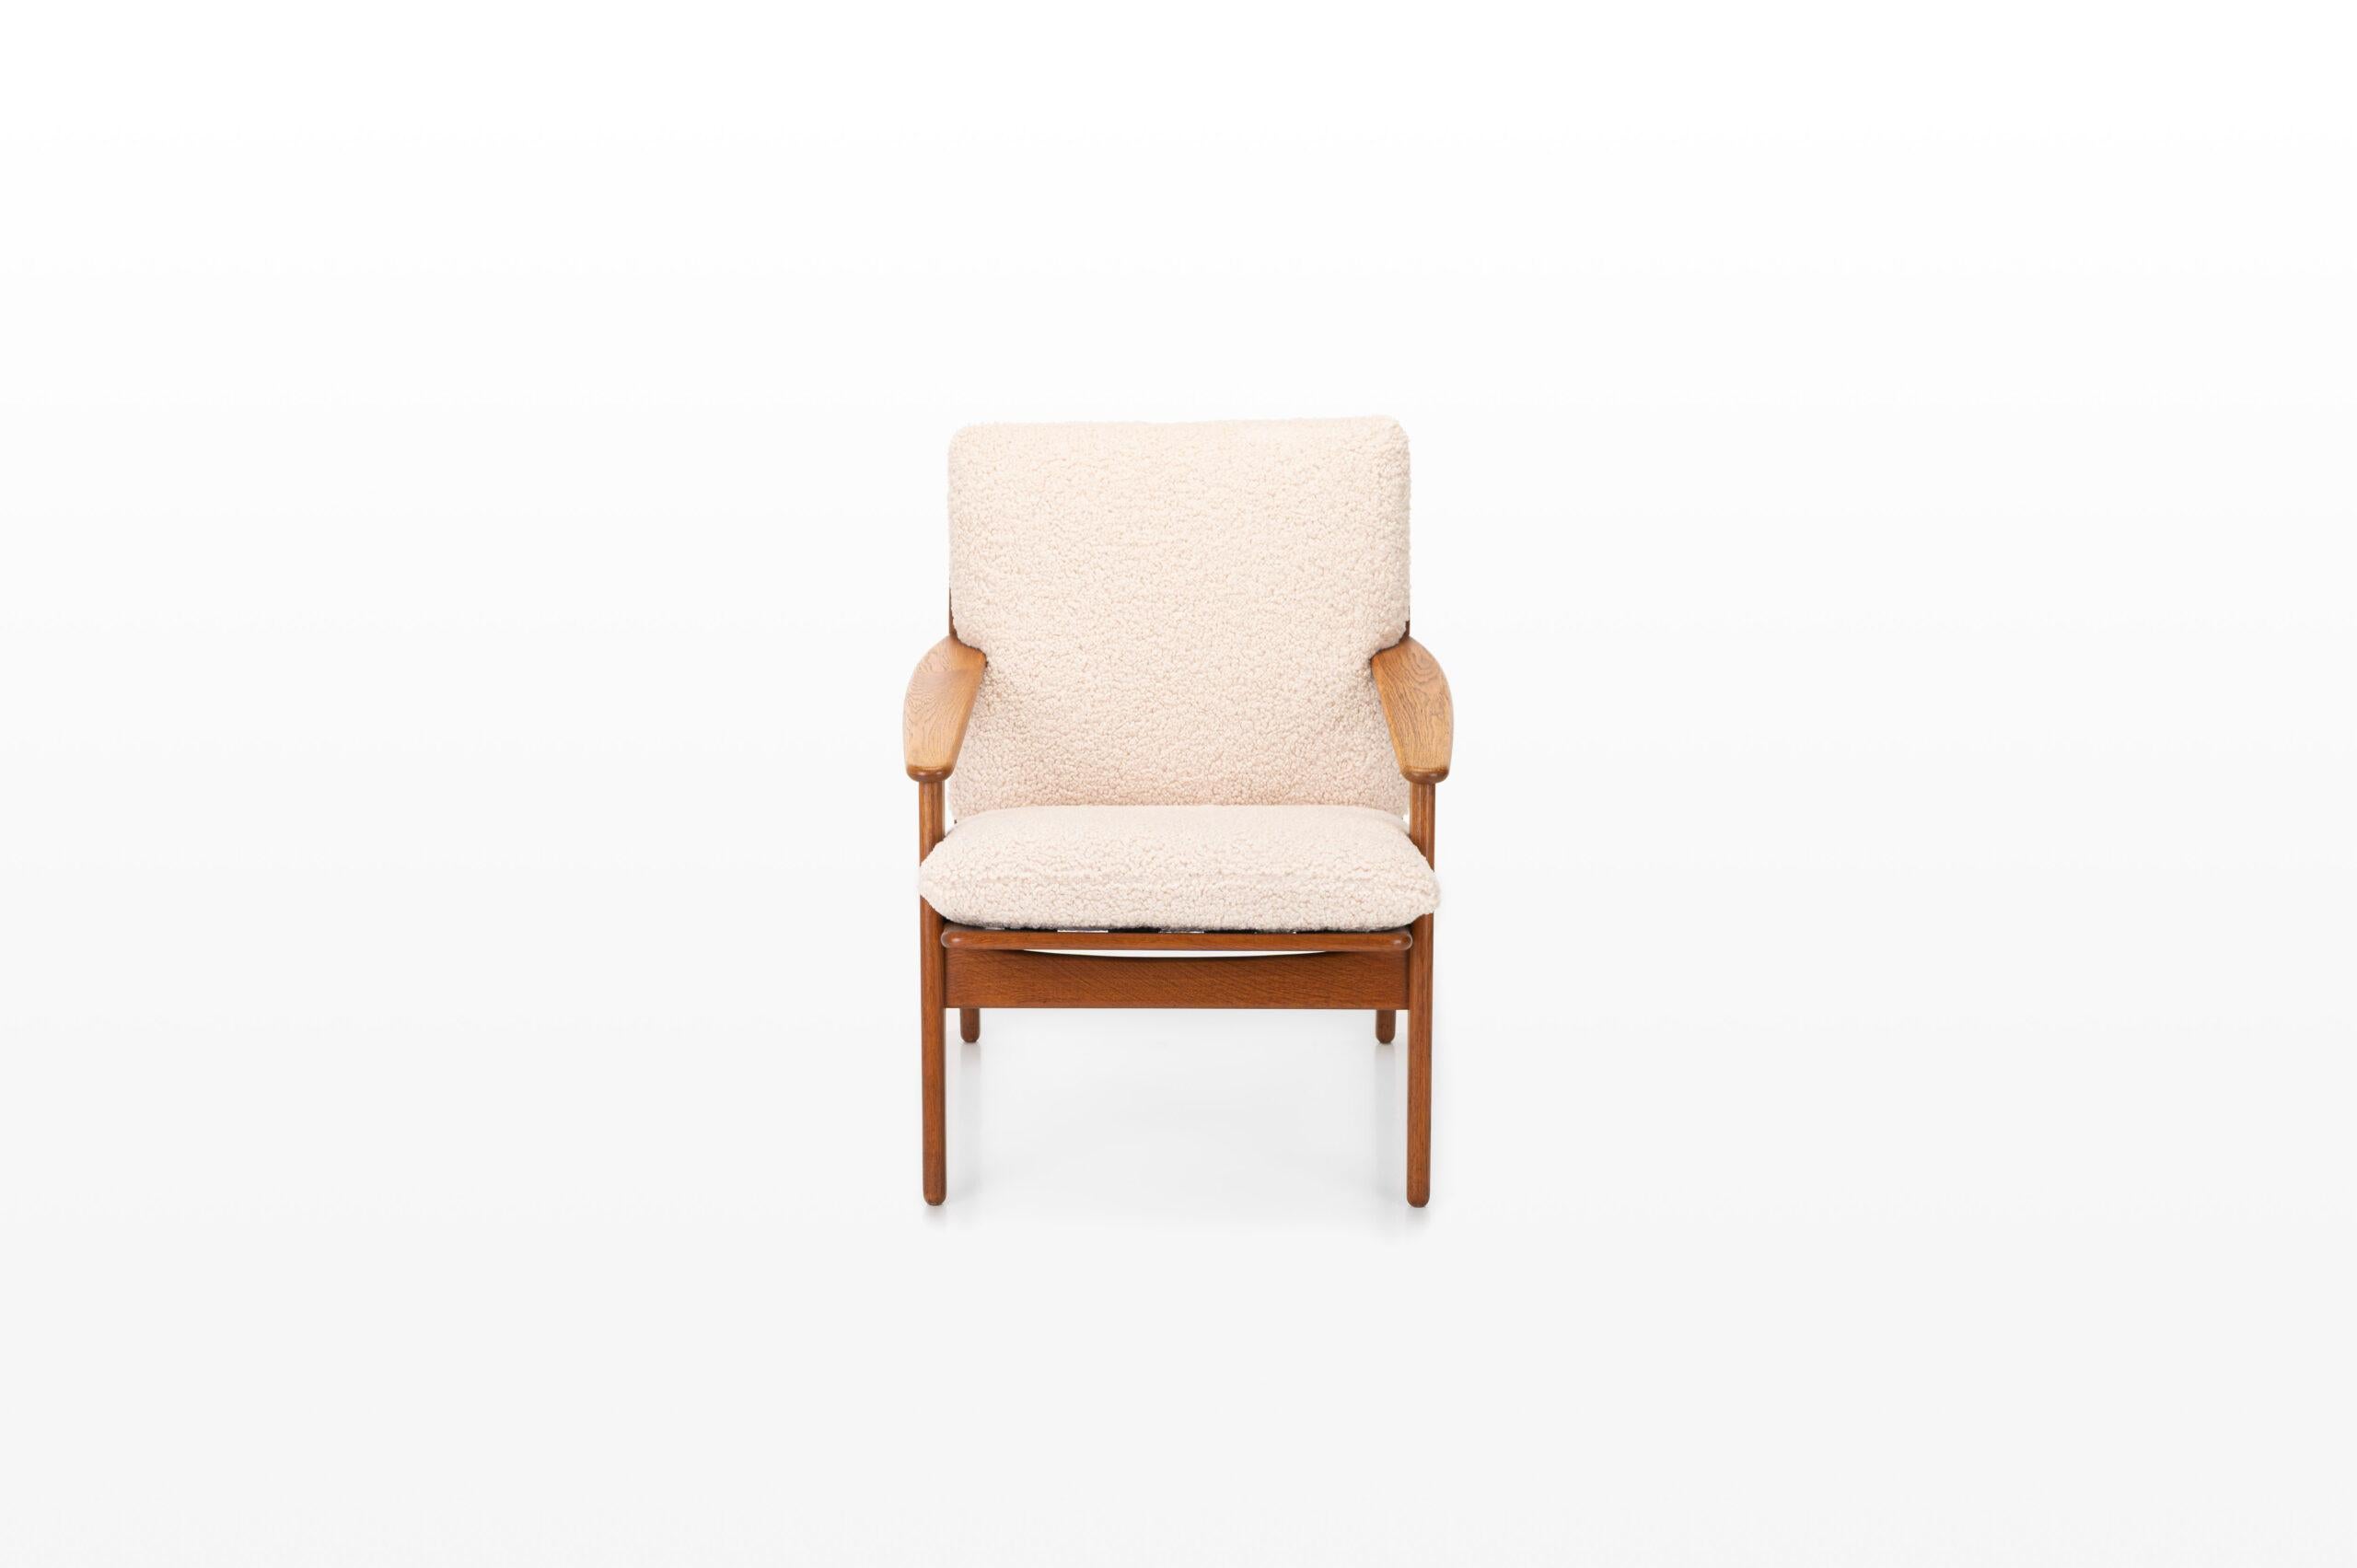 Très beau fauteuil vintage conçu par Poul Volther pour FDB Mobler, Danemark années 1960. Les coussins ont été retapissés avec un tissu confortable de type teddy.
 